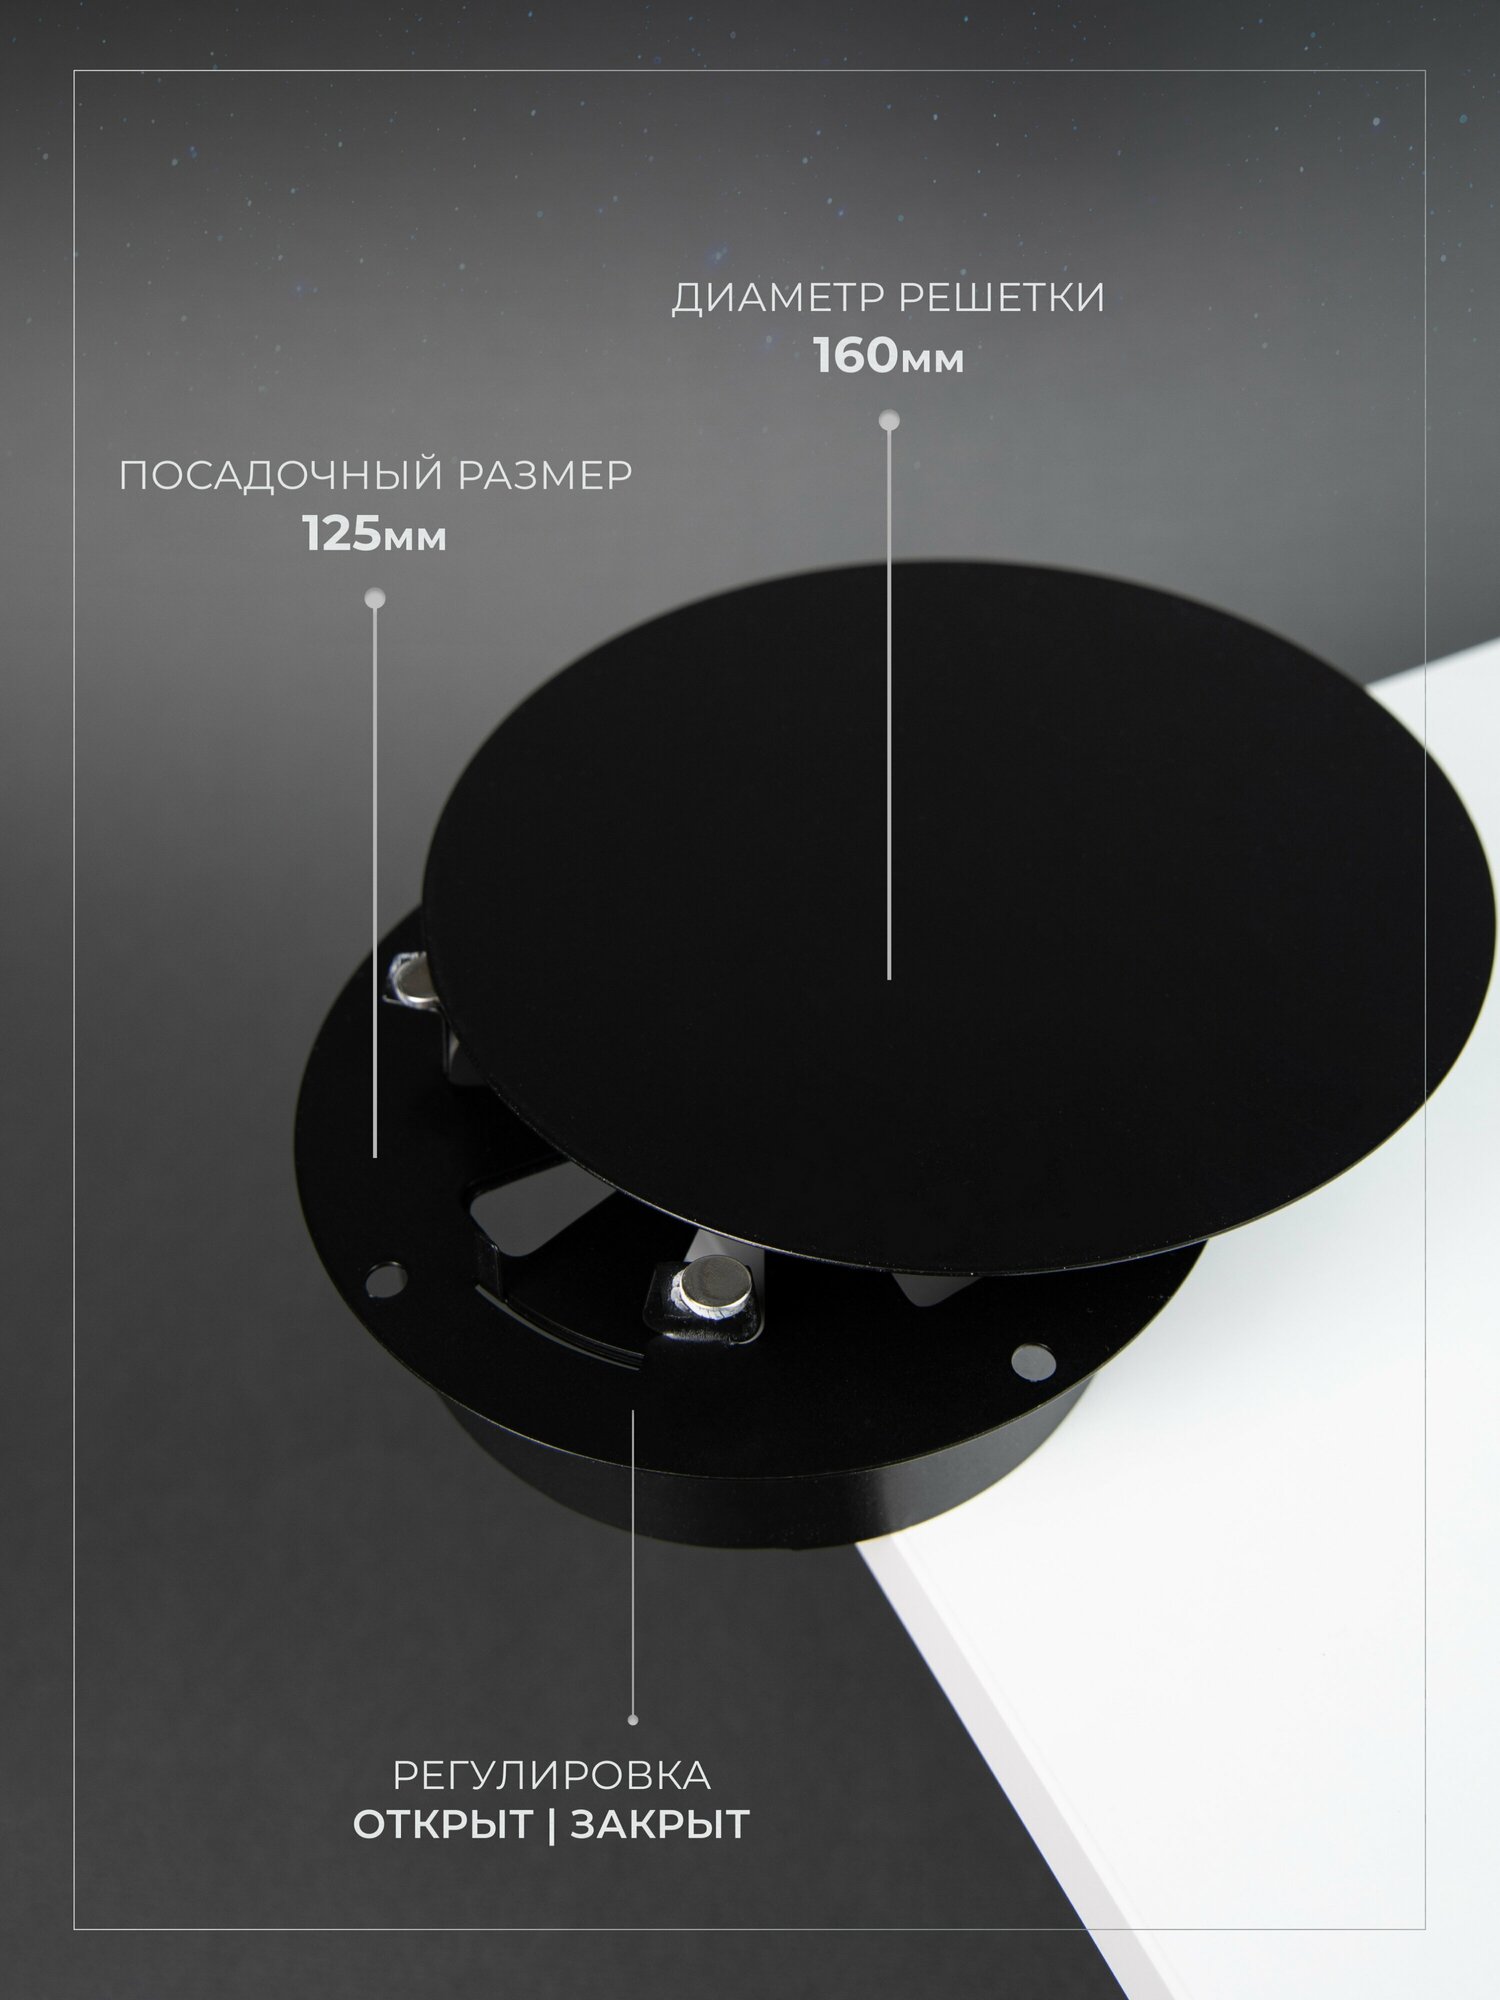 Вентиляционная решетка на магнитах (декоративный диффузор с регулировкой) 125x125 мм. (ДК125 черная), металлическая, производитель Родфер - фотография № 2